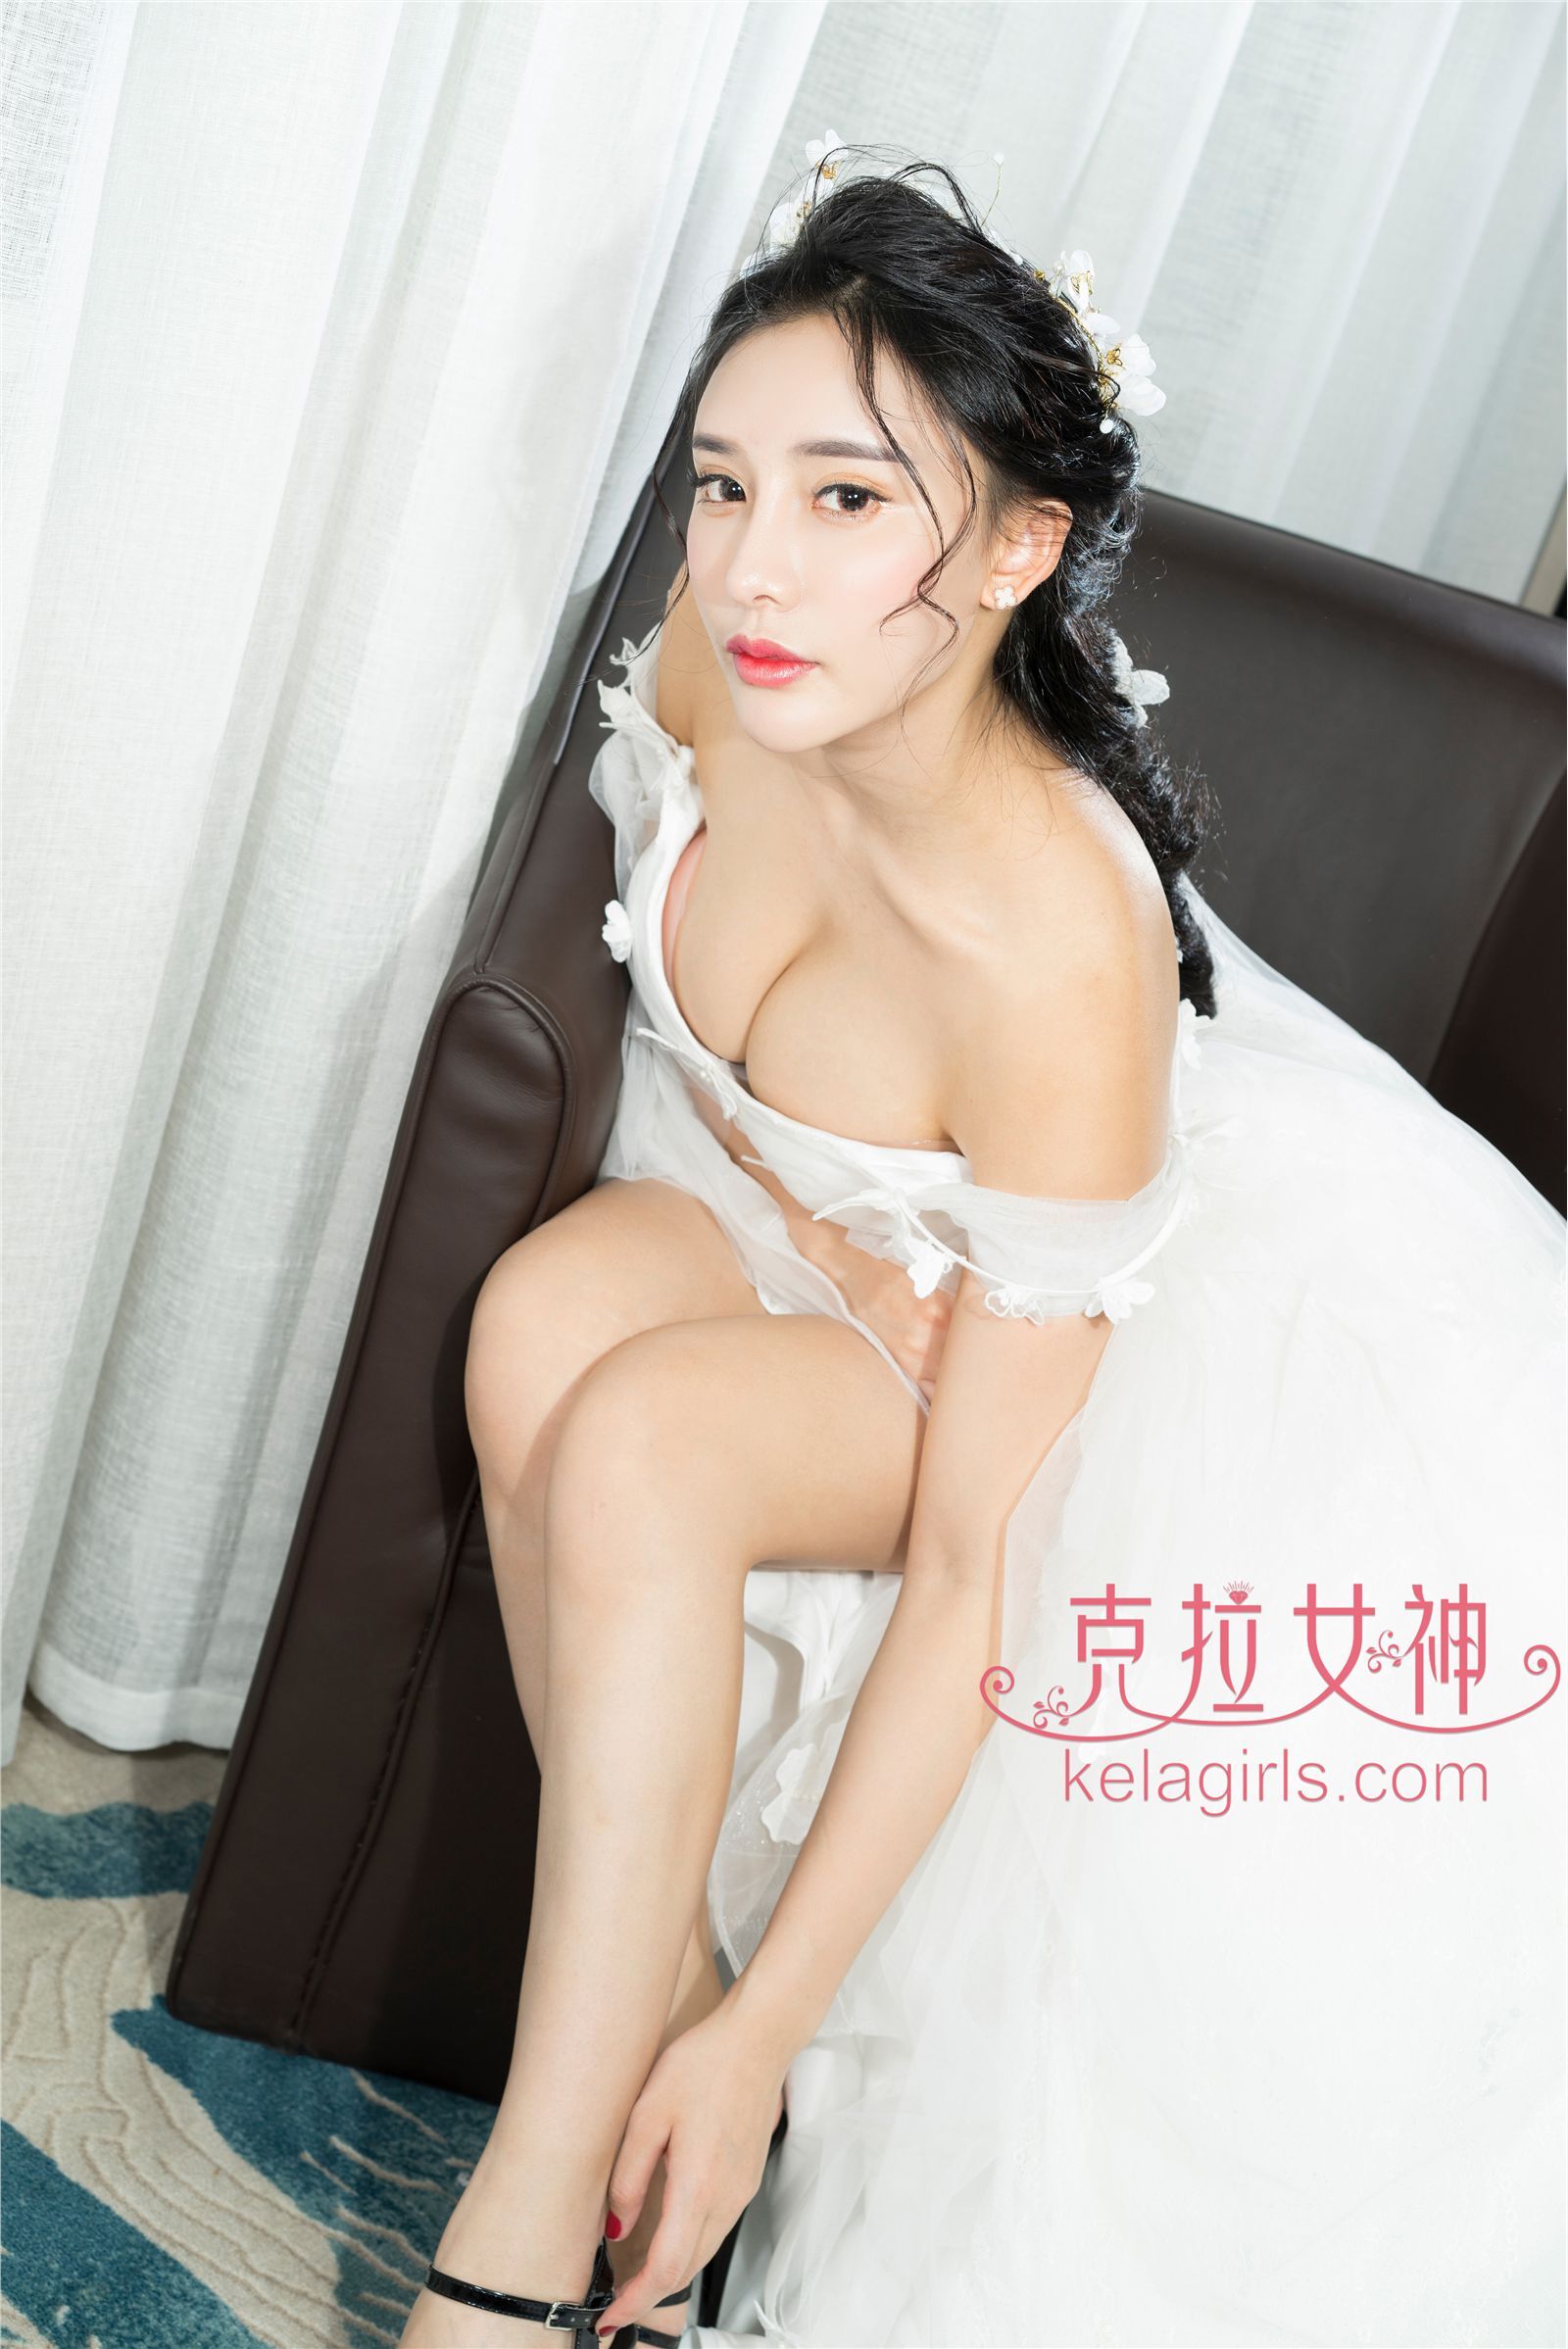 [Kela girls] Kela goddess 2017-04-26 Xiao Xi, you are going to marry me today